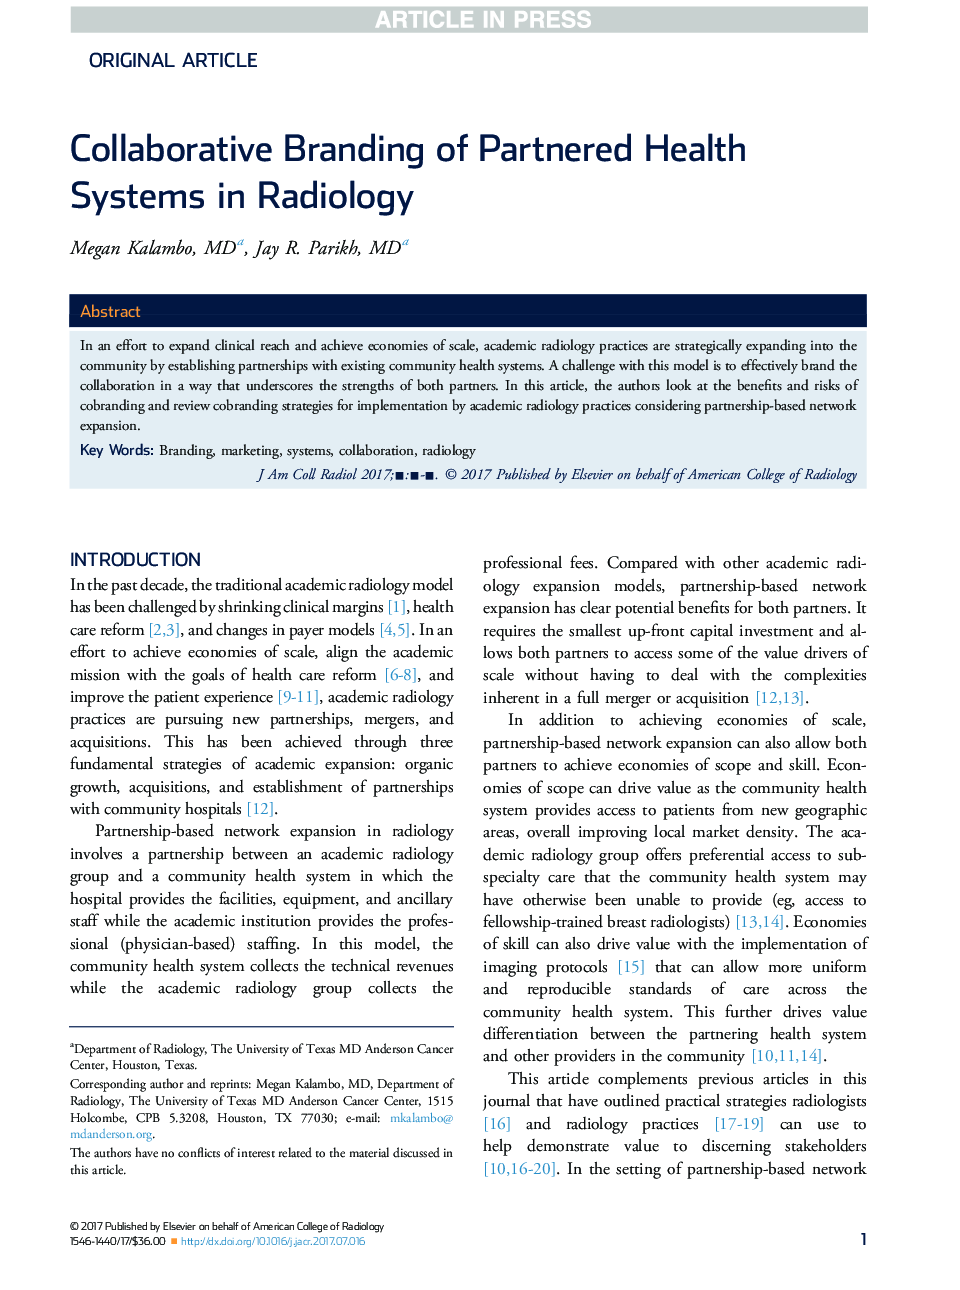 نام تجاری مشارکتی از سیستم های بهداشتی همگانی در رادیولوژی 